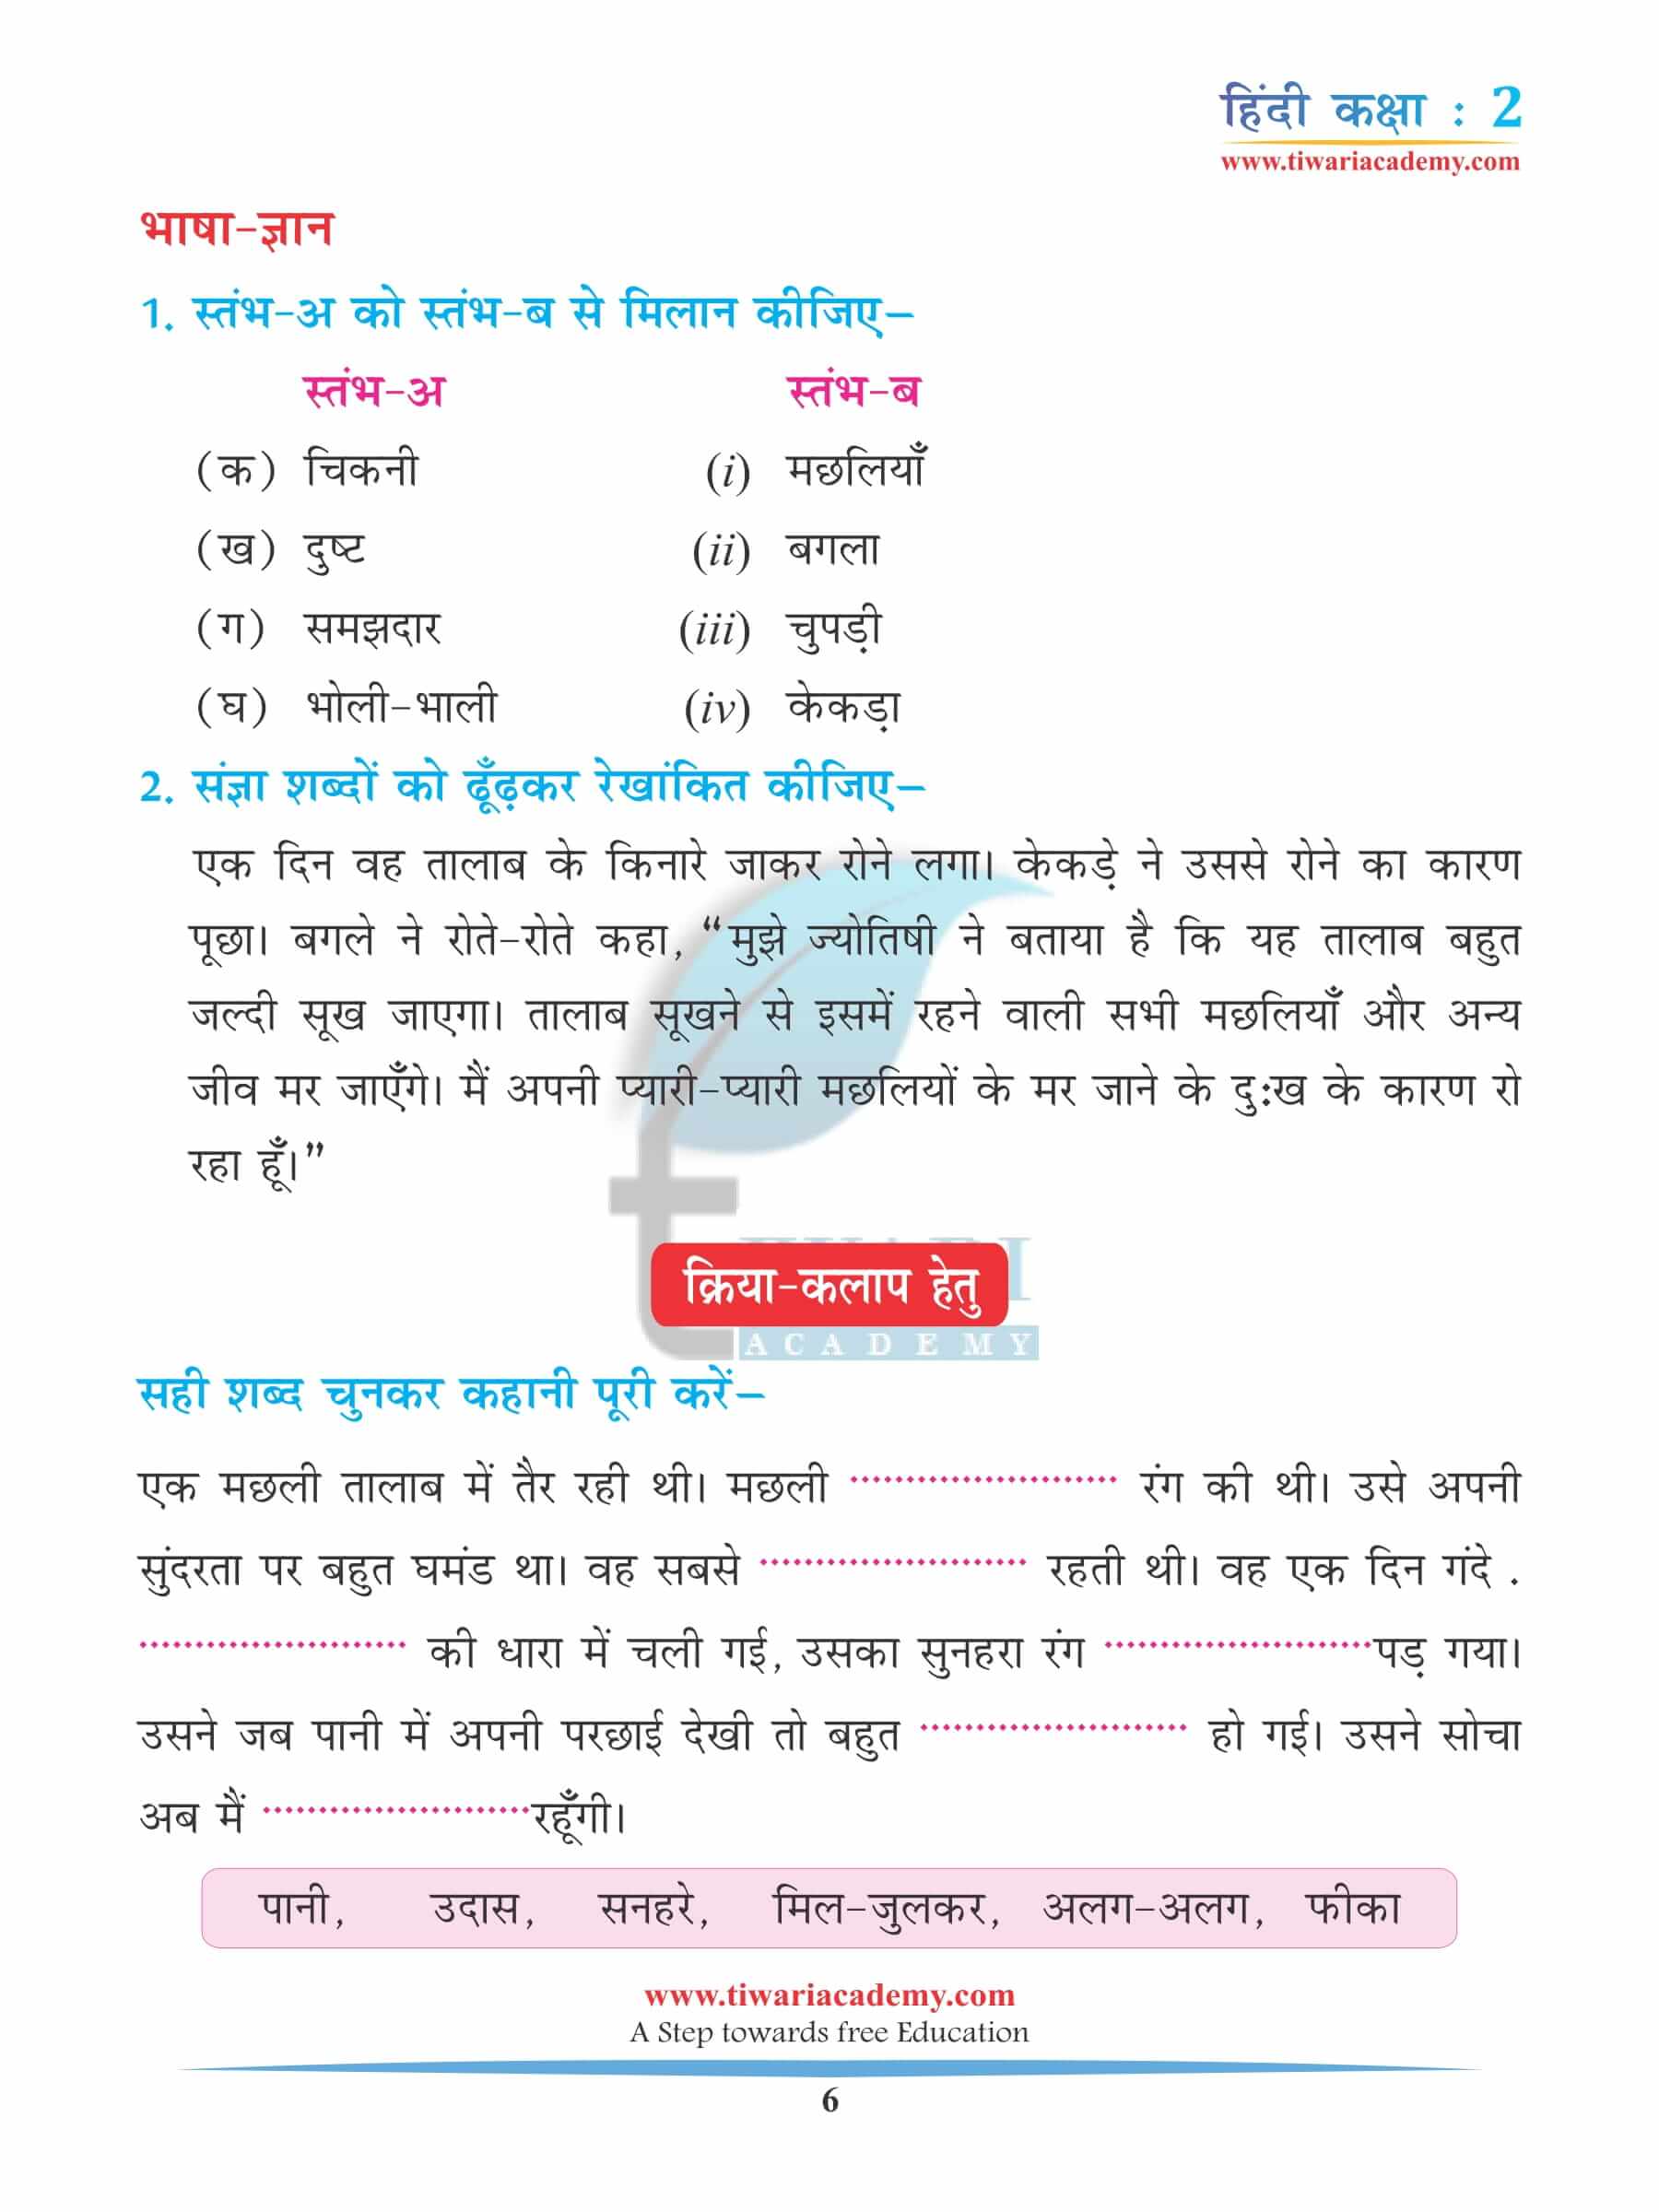 कक्षा 2 हिंदी अध्याय 9 अभ्यास के लिए